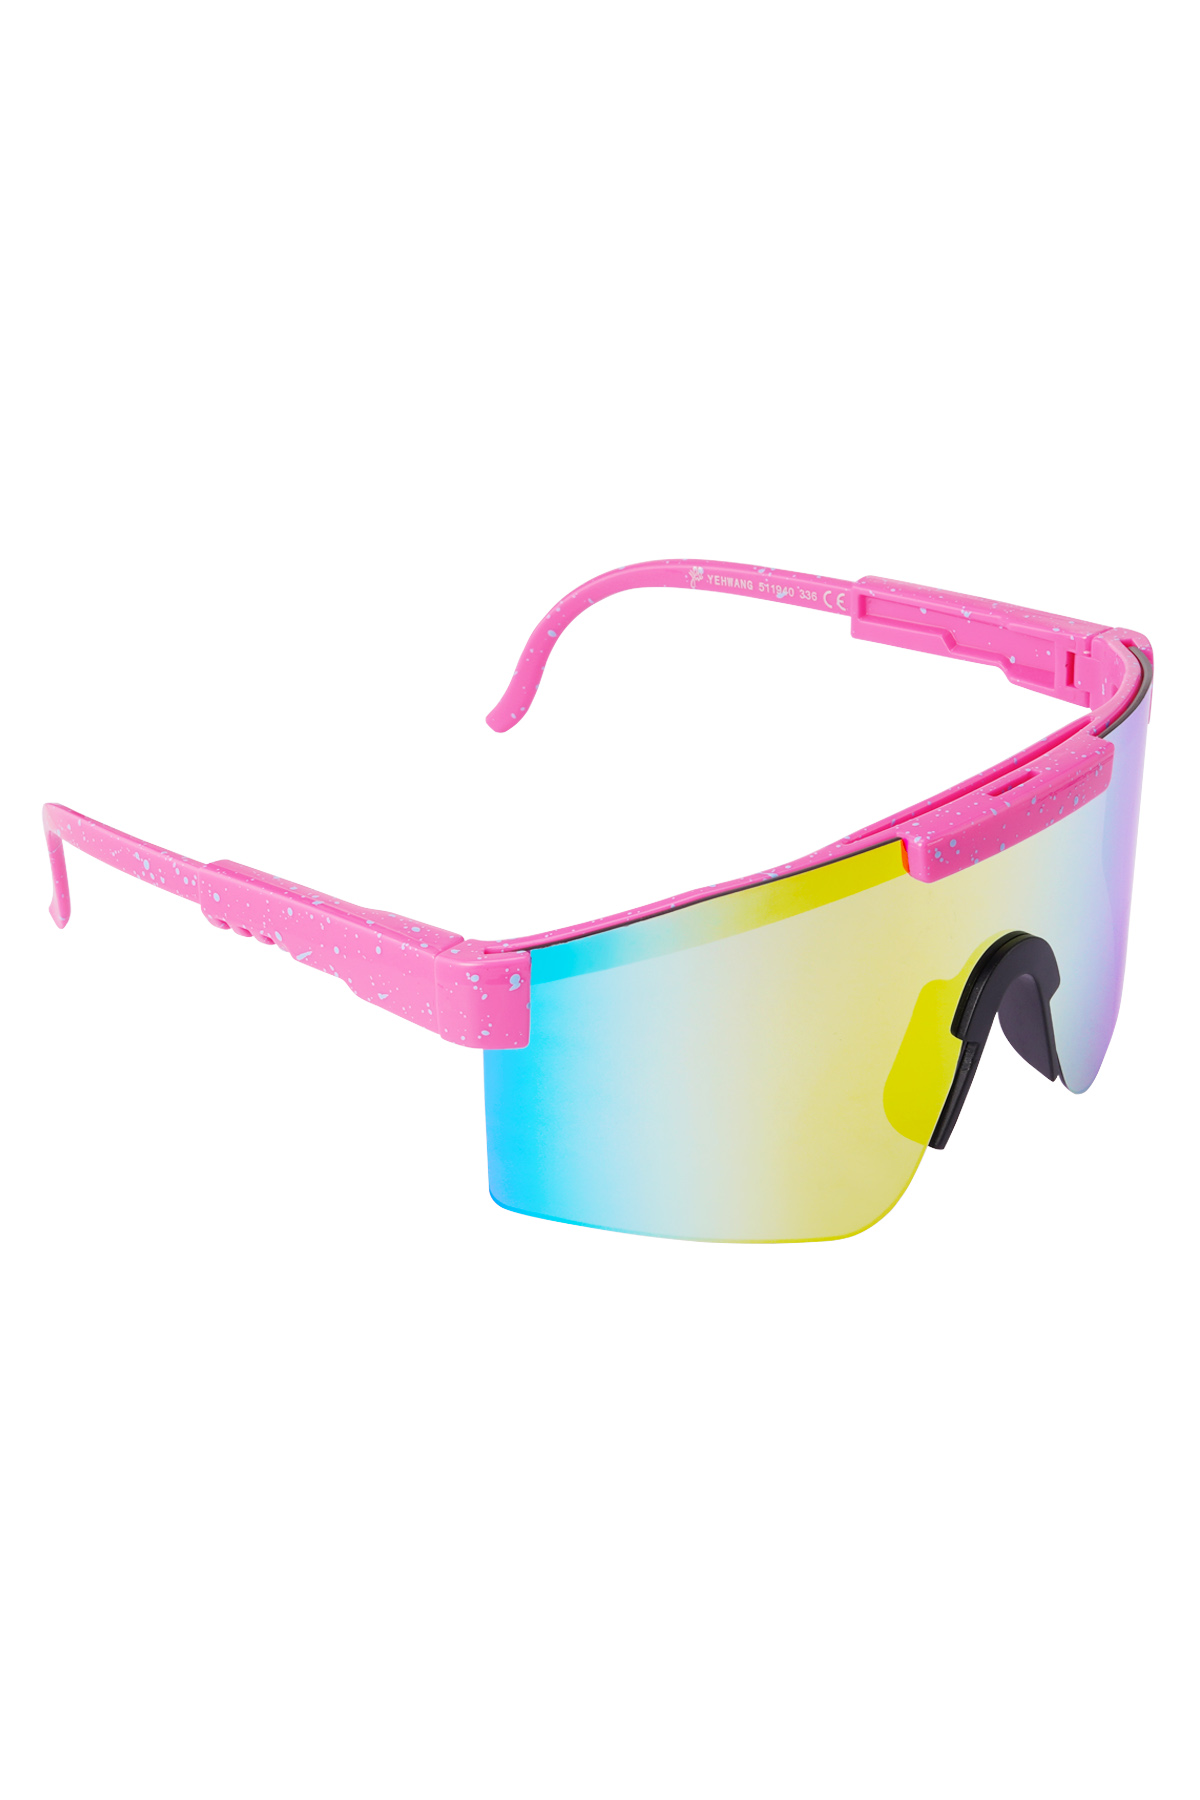 Güneş gözlüğü baskılı renkli lensler - pembe h5 